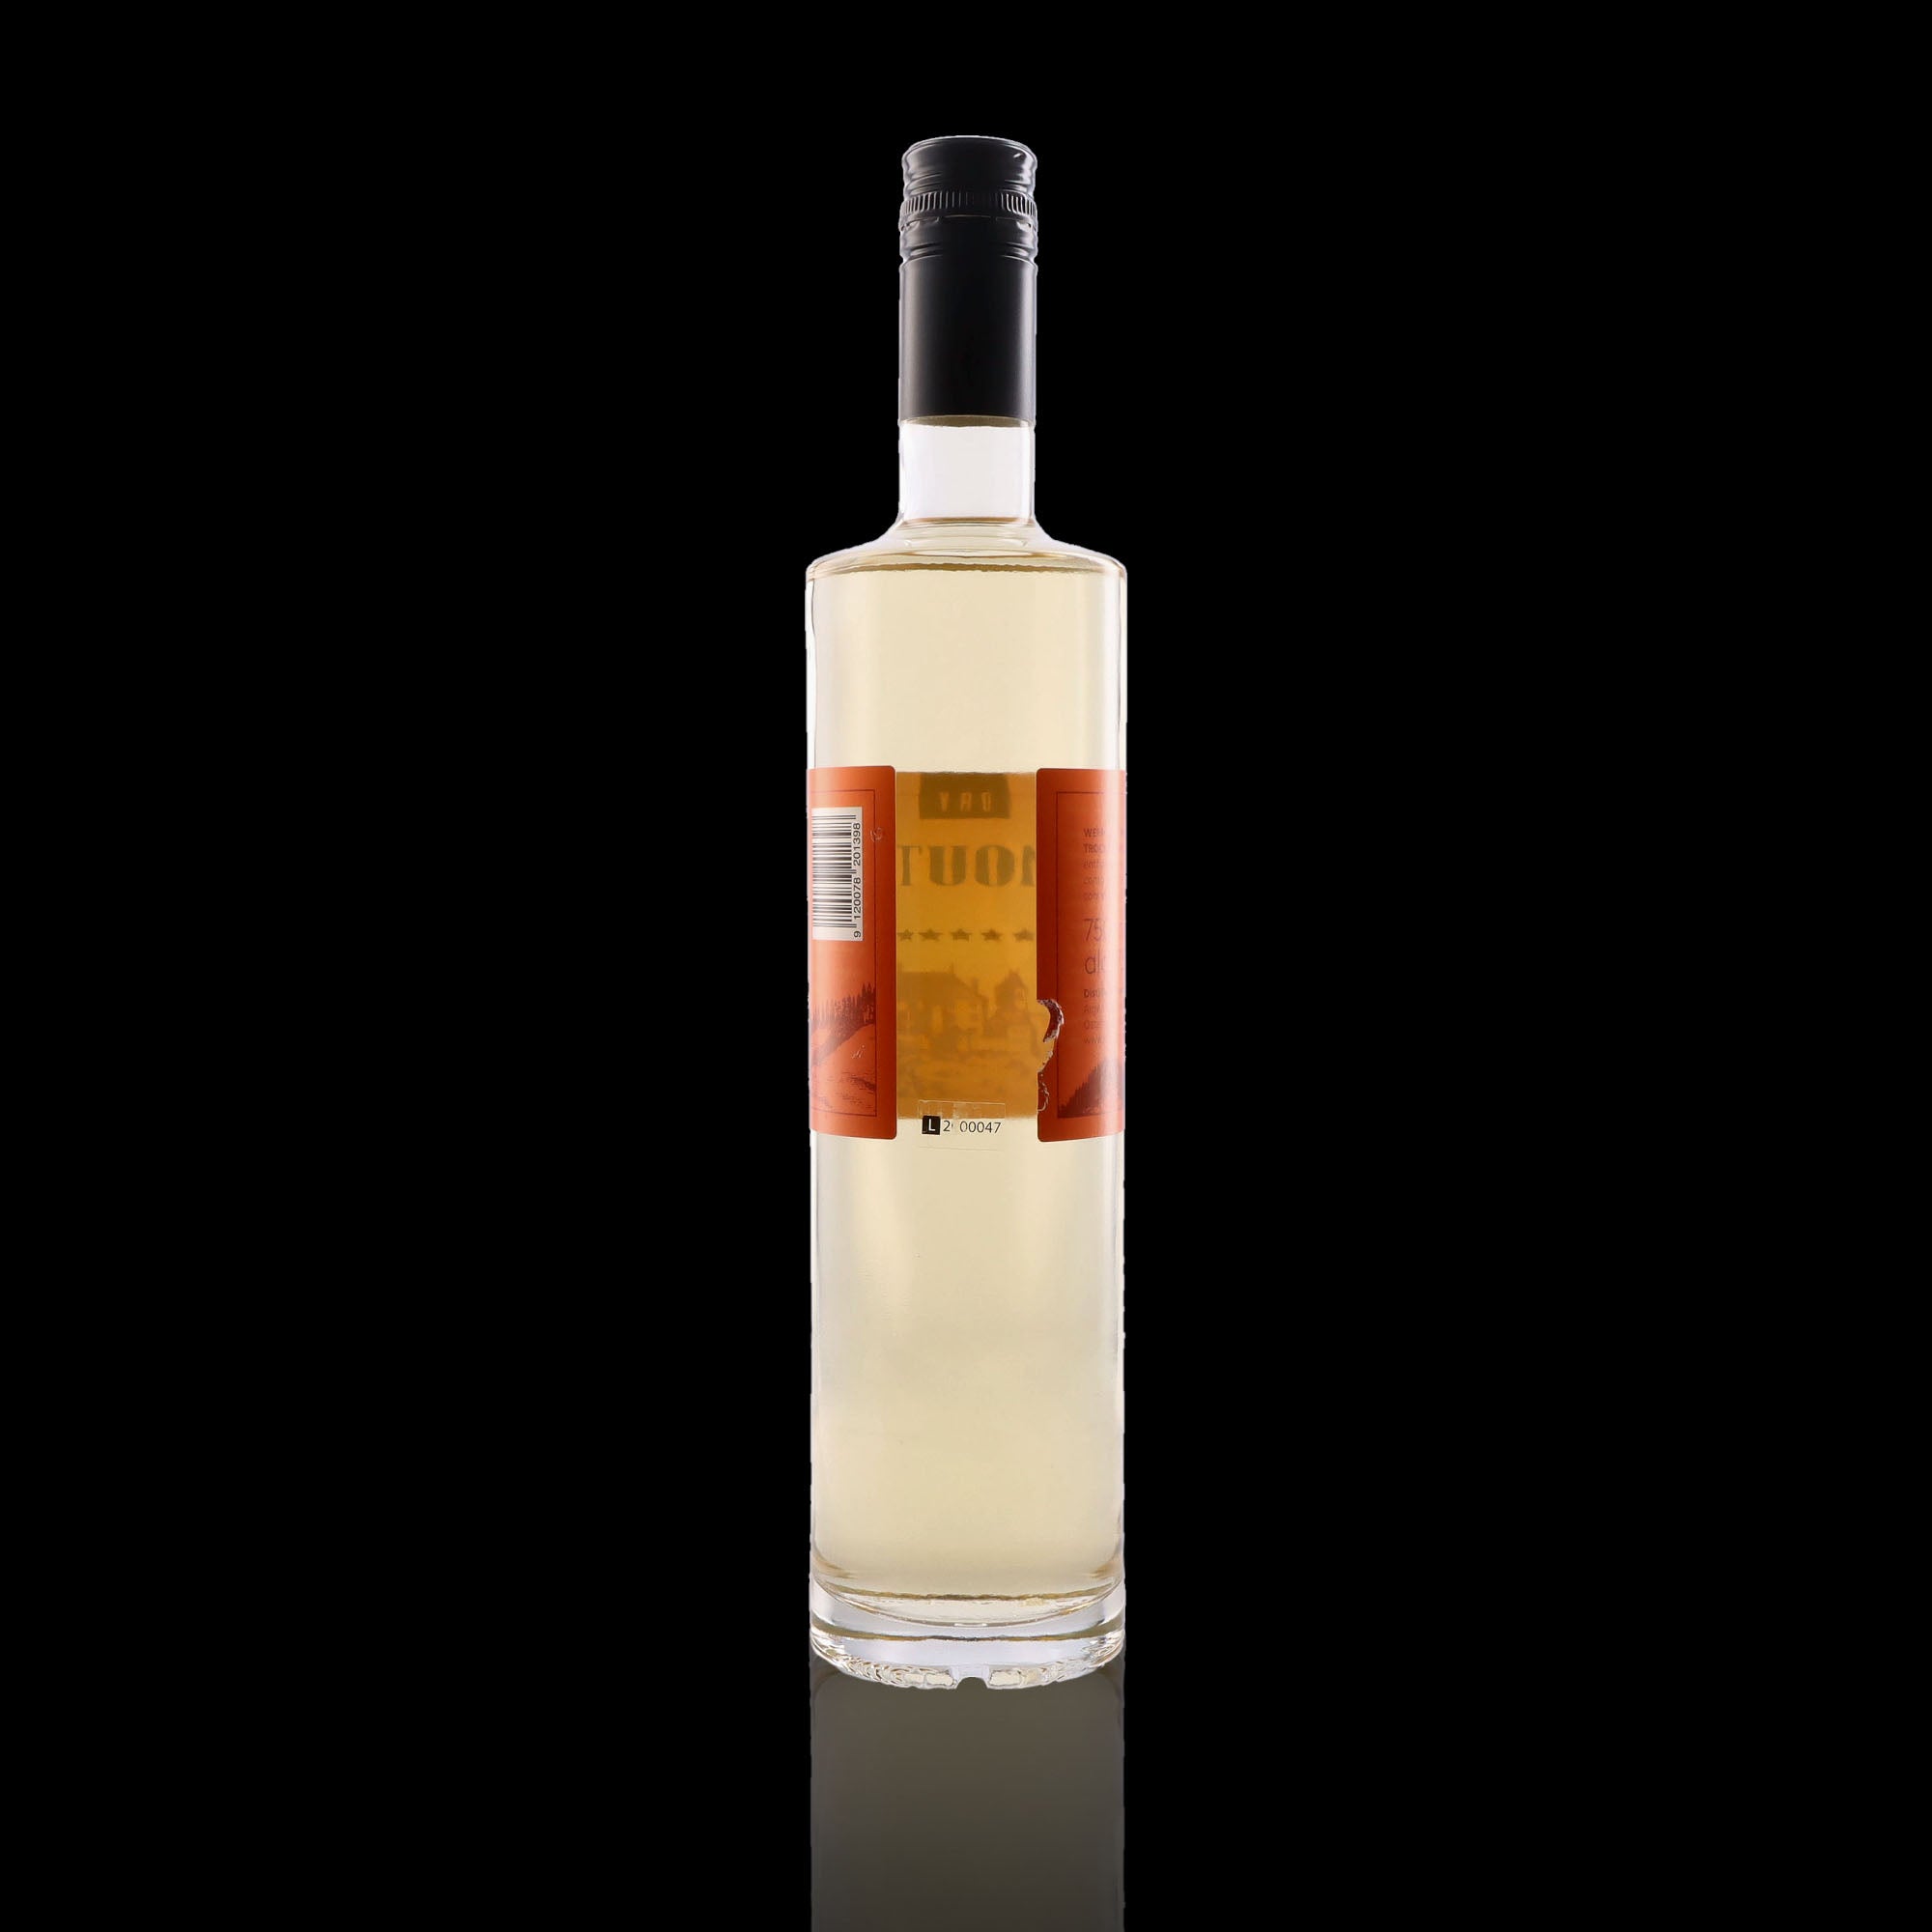 Une bouteille de vermouth, de la marque Distillery Krauss, nommée 700 Dry.